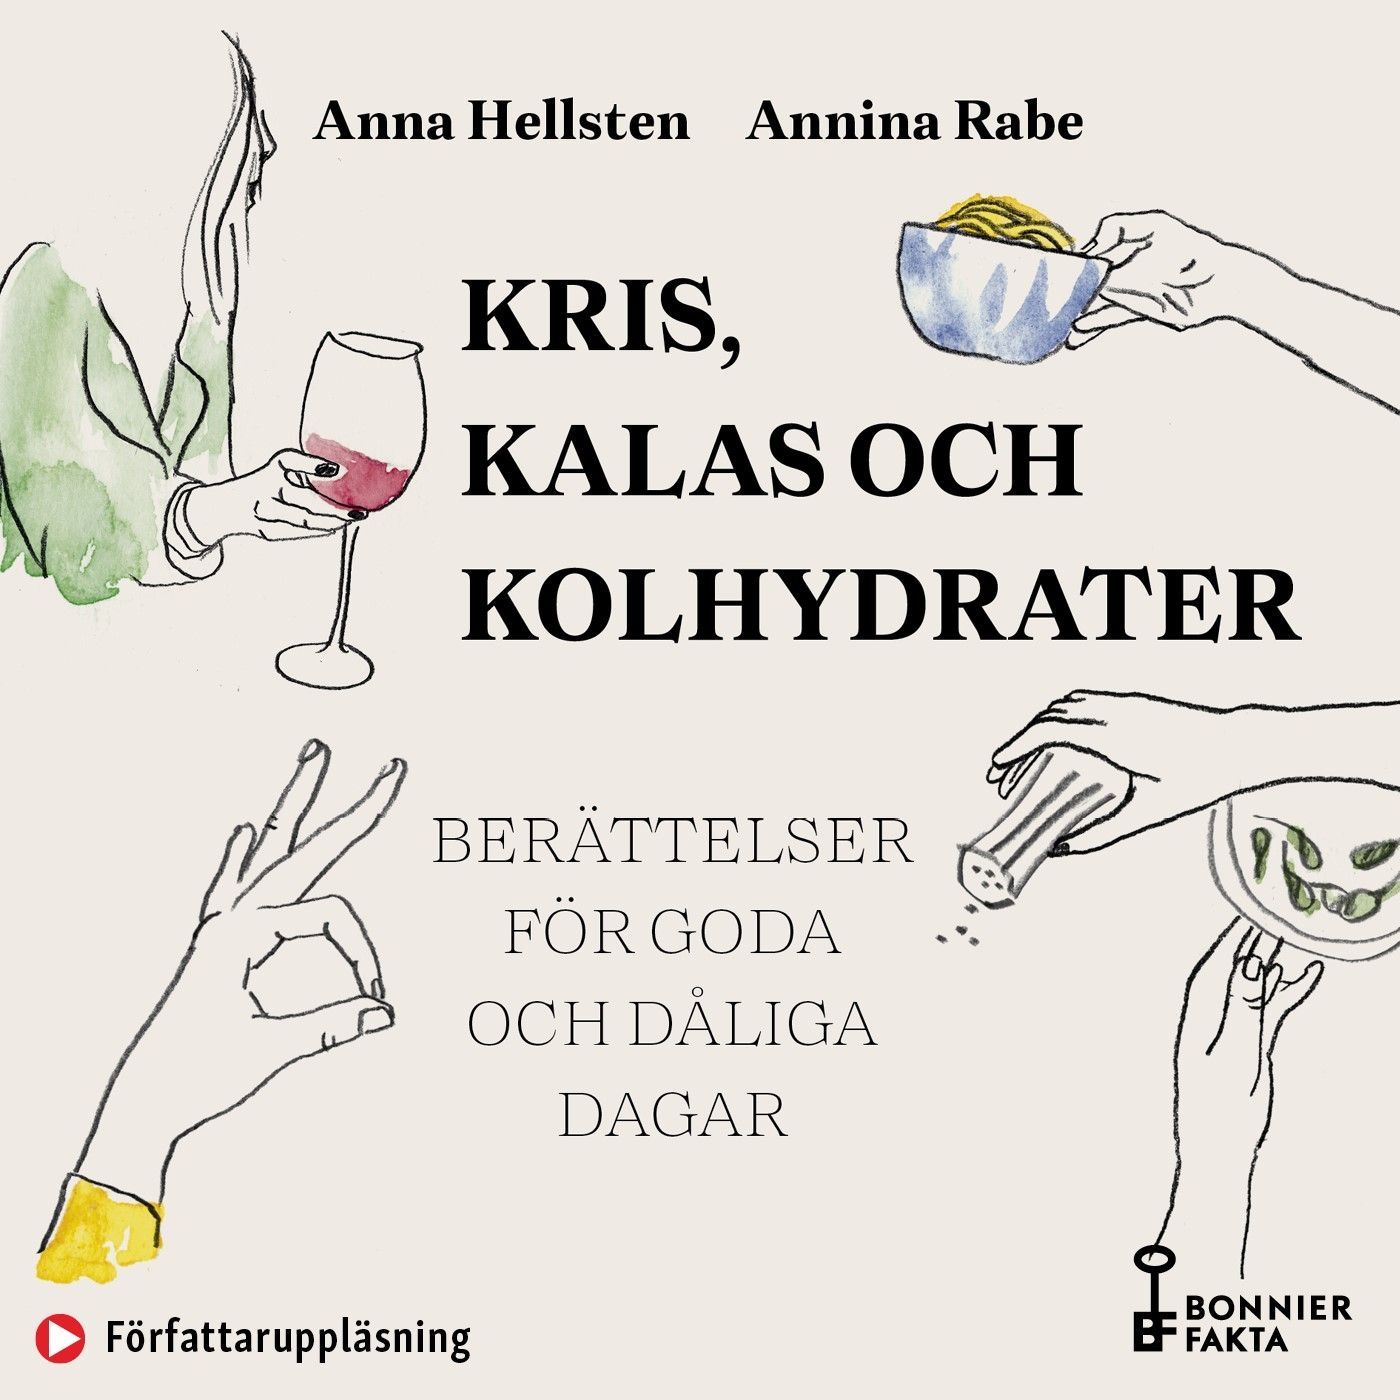 Kris, kalas och kolhydrater : Recept och berättelser för goda och dåliga dagar, ljudbok av Anna Hellsten, Annina Rabe